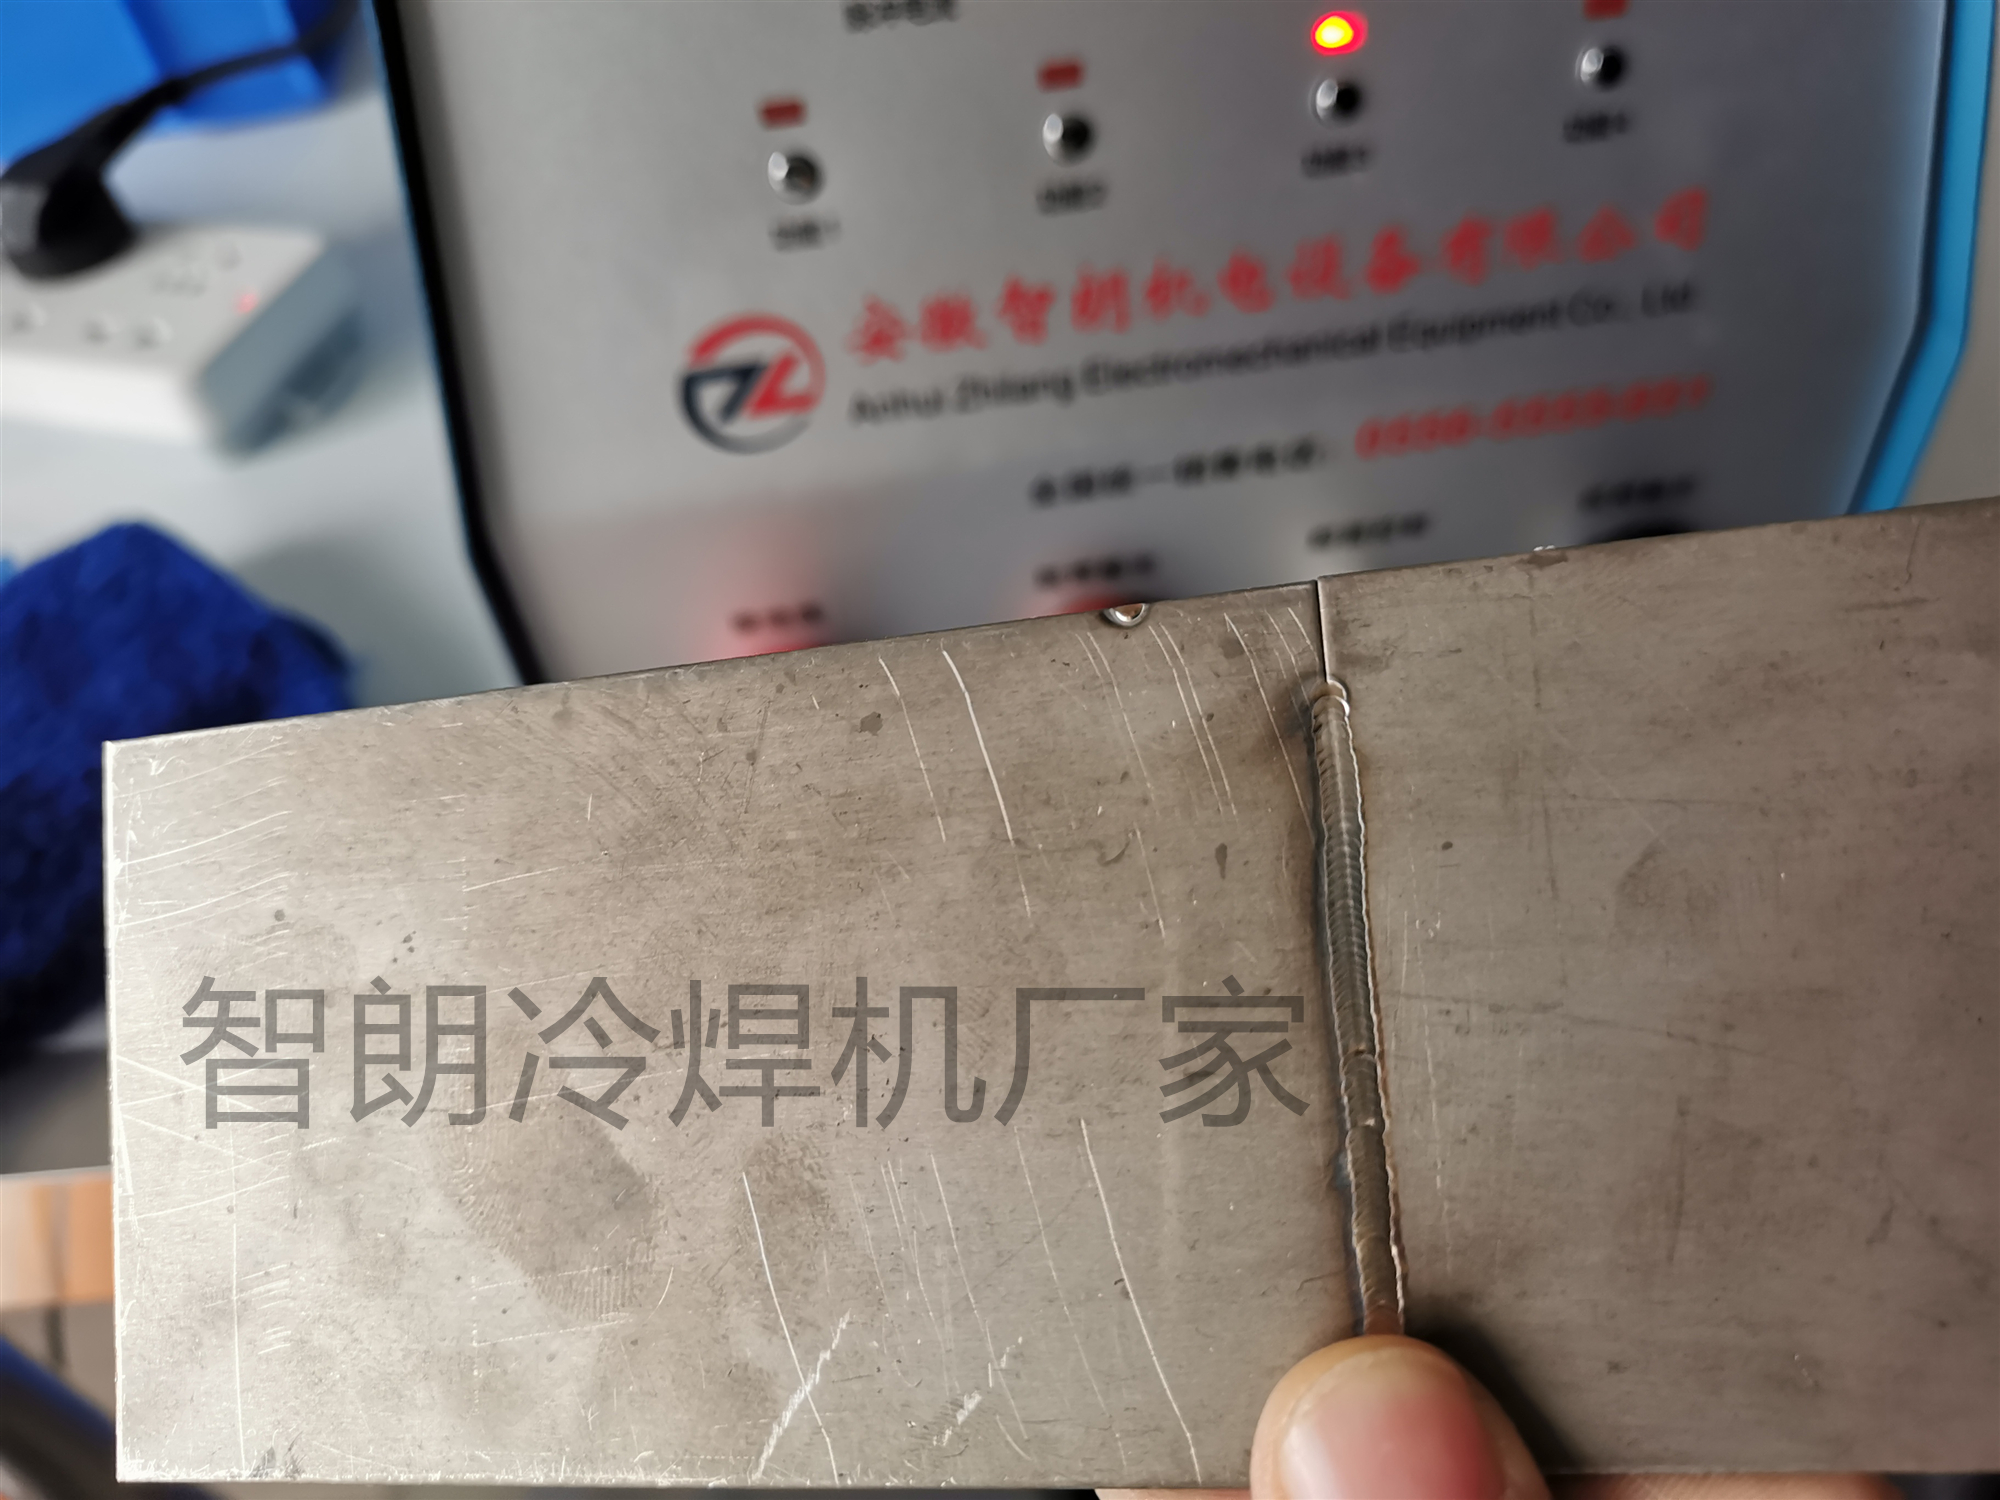 安庆市智朗不锈钢铝合金小型仿激光焊机厂家智朗不锈钢铝合金小型仿激光焊机 模具修补机 高精密修复冷焊机